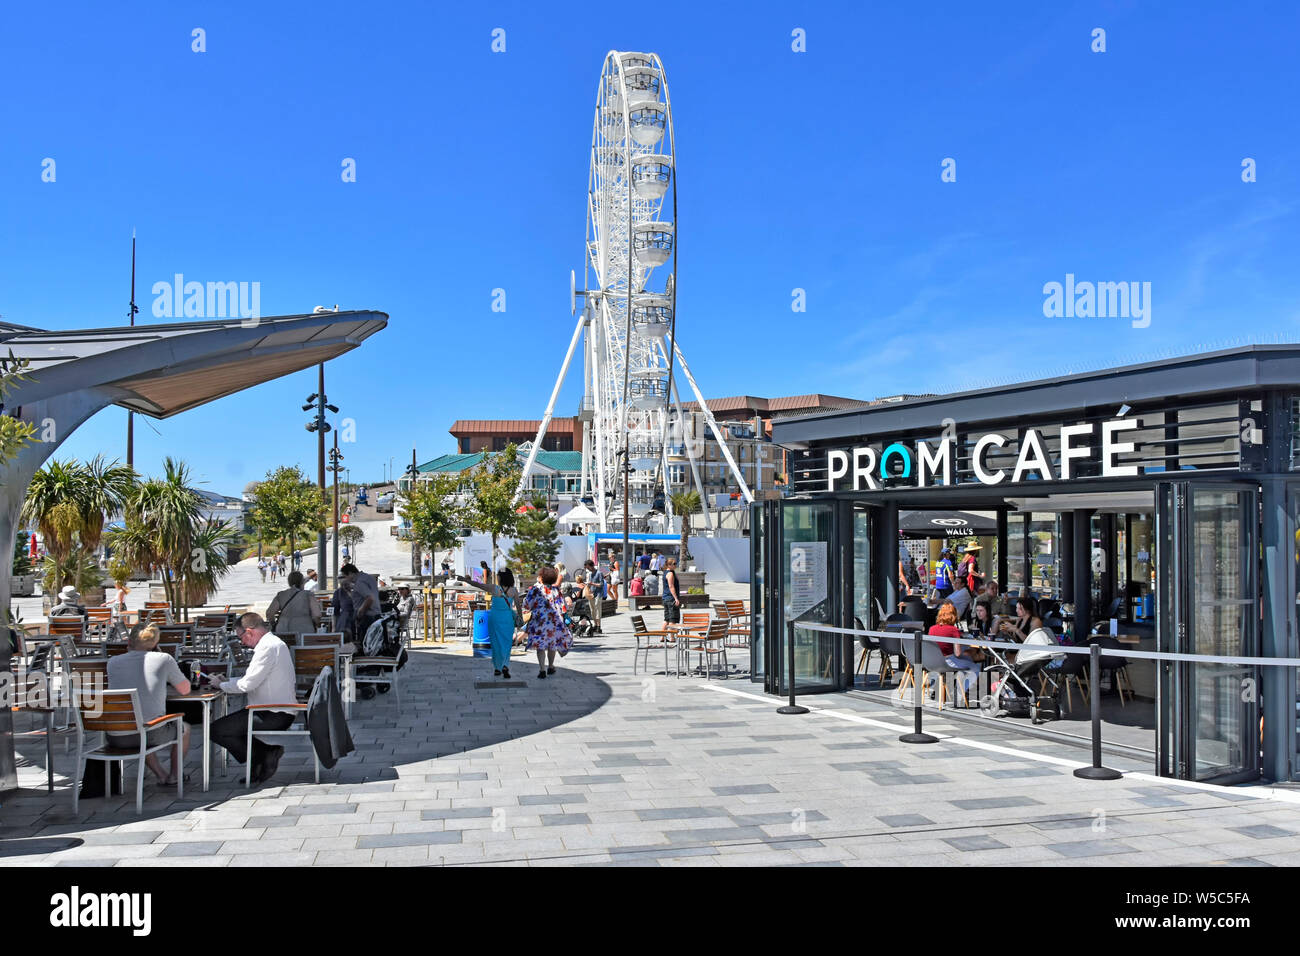 Bournemouth blauen Himmel Sommer Urlaub & Seaside Resort Pier Ansatz Fußgängerzone Rat Prom Cafe Sitzplätze & Big Wheel über Dorset England UK Stockfoto